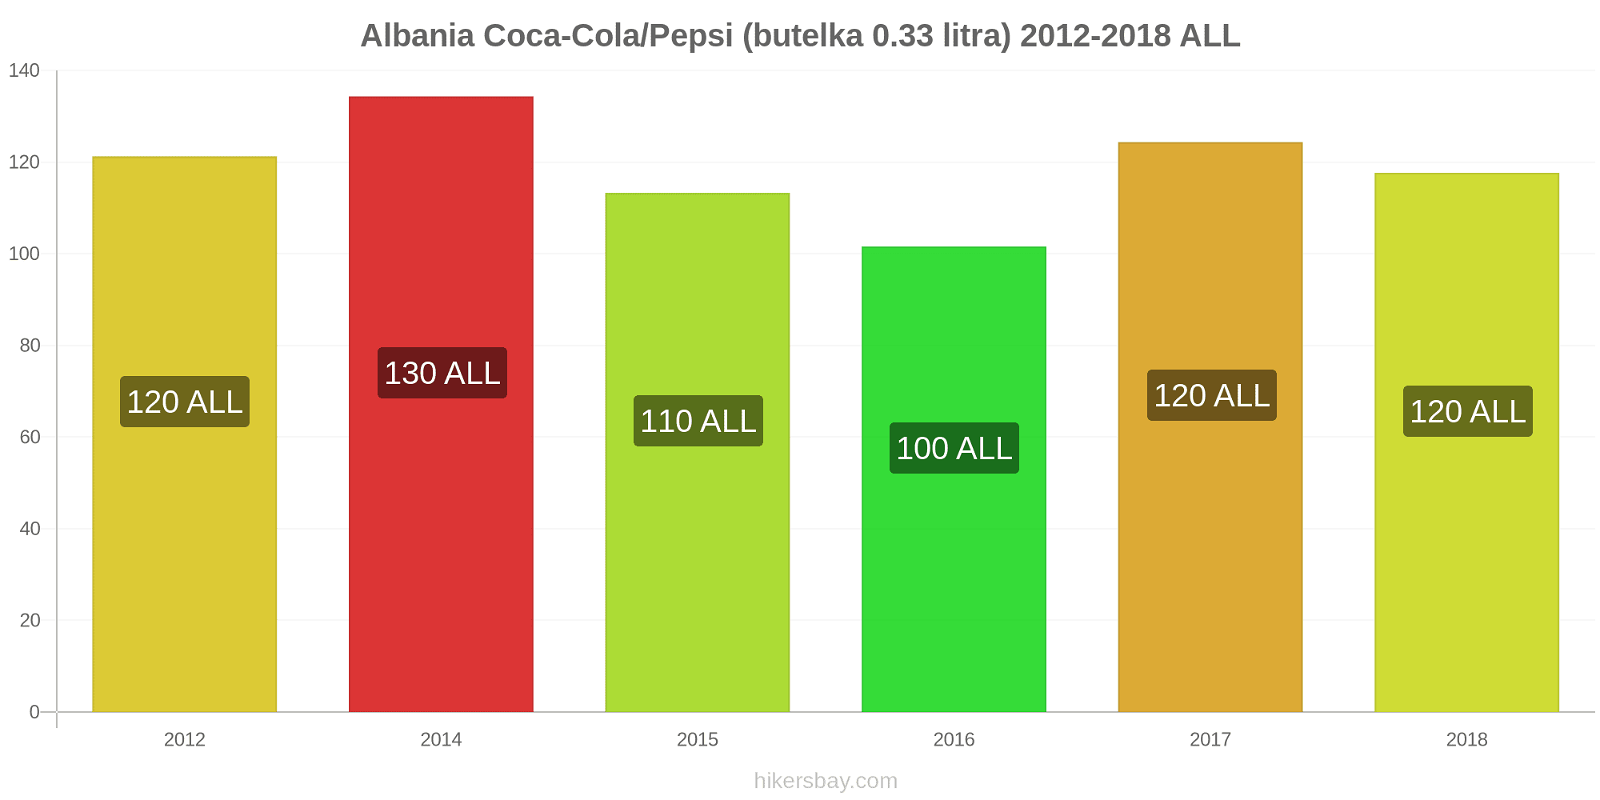 Albania zmiany cen Coca-Cola/Pepsi (butelka 0.33 litra) hikersbay.com